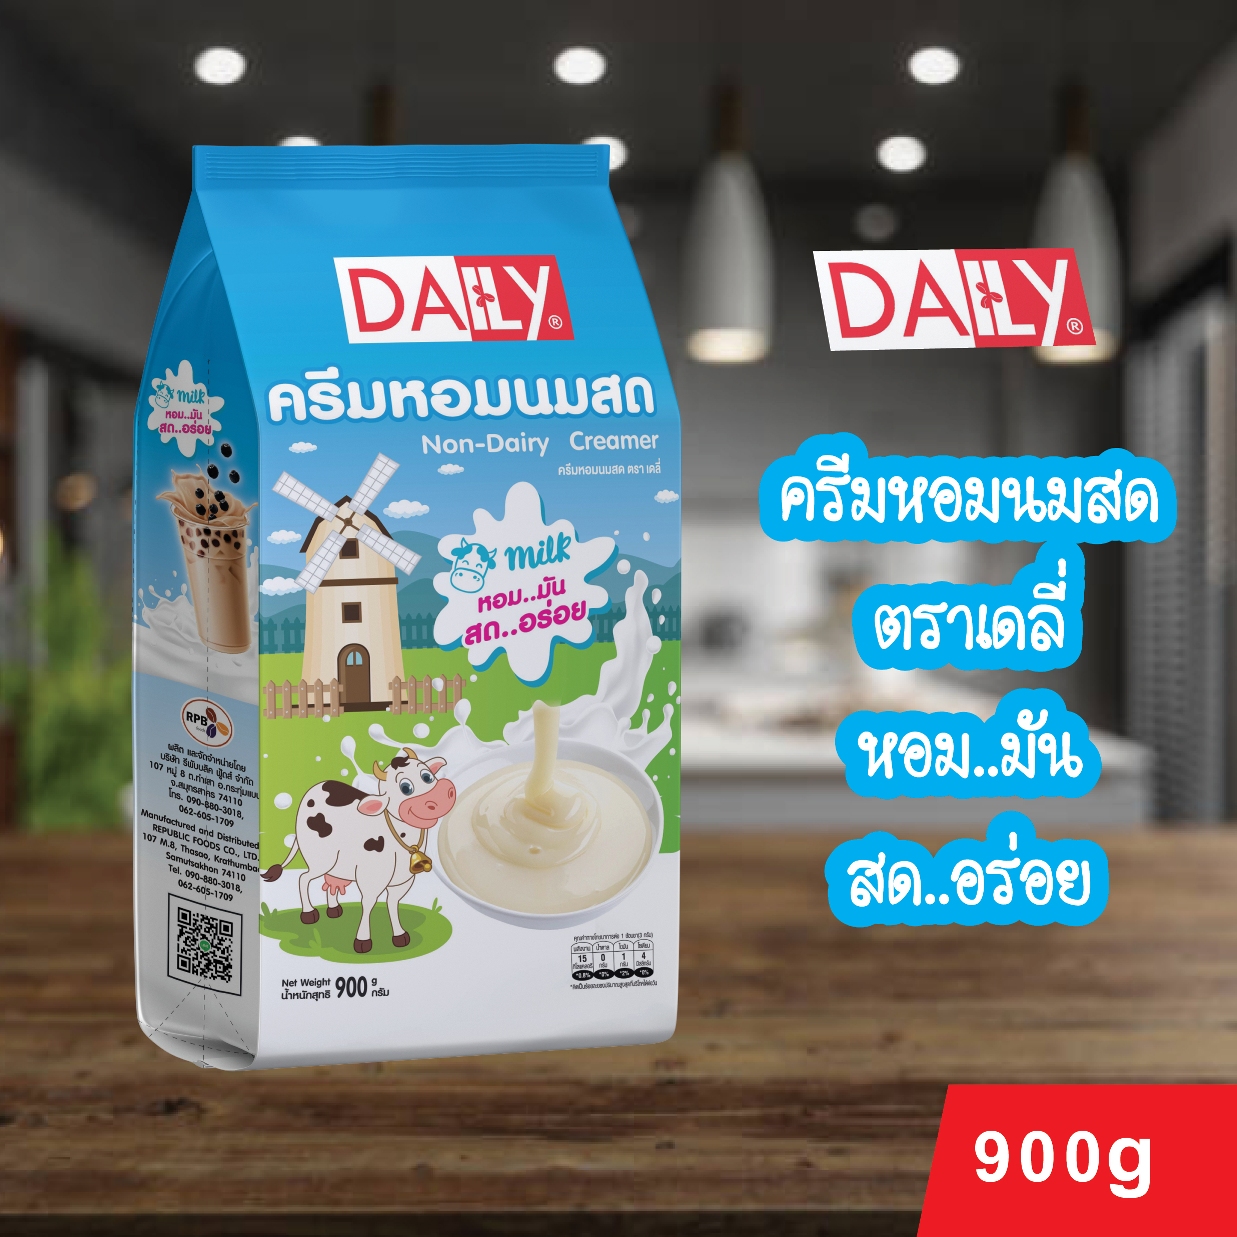 ครีมหอมนมสด ตรา เดลี่ (Non-Dairy Creamer Daily Brand)